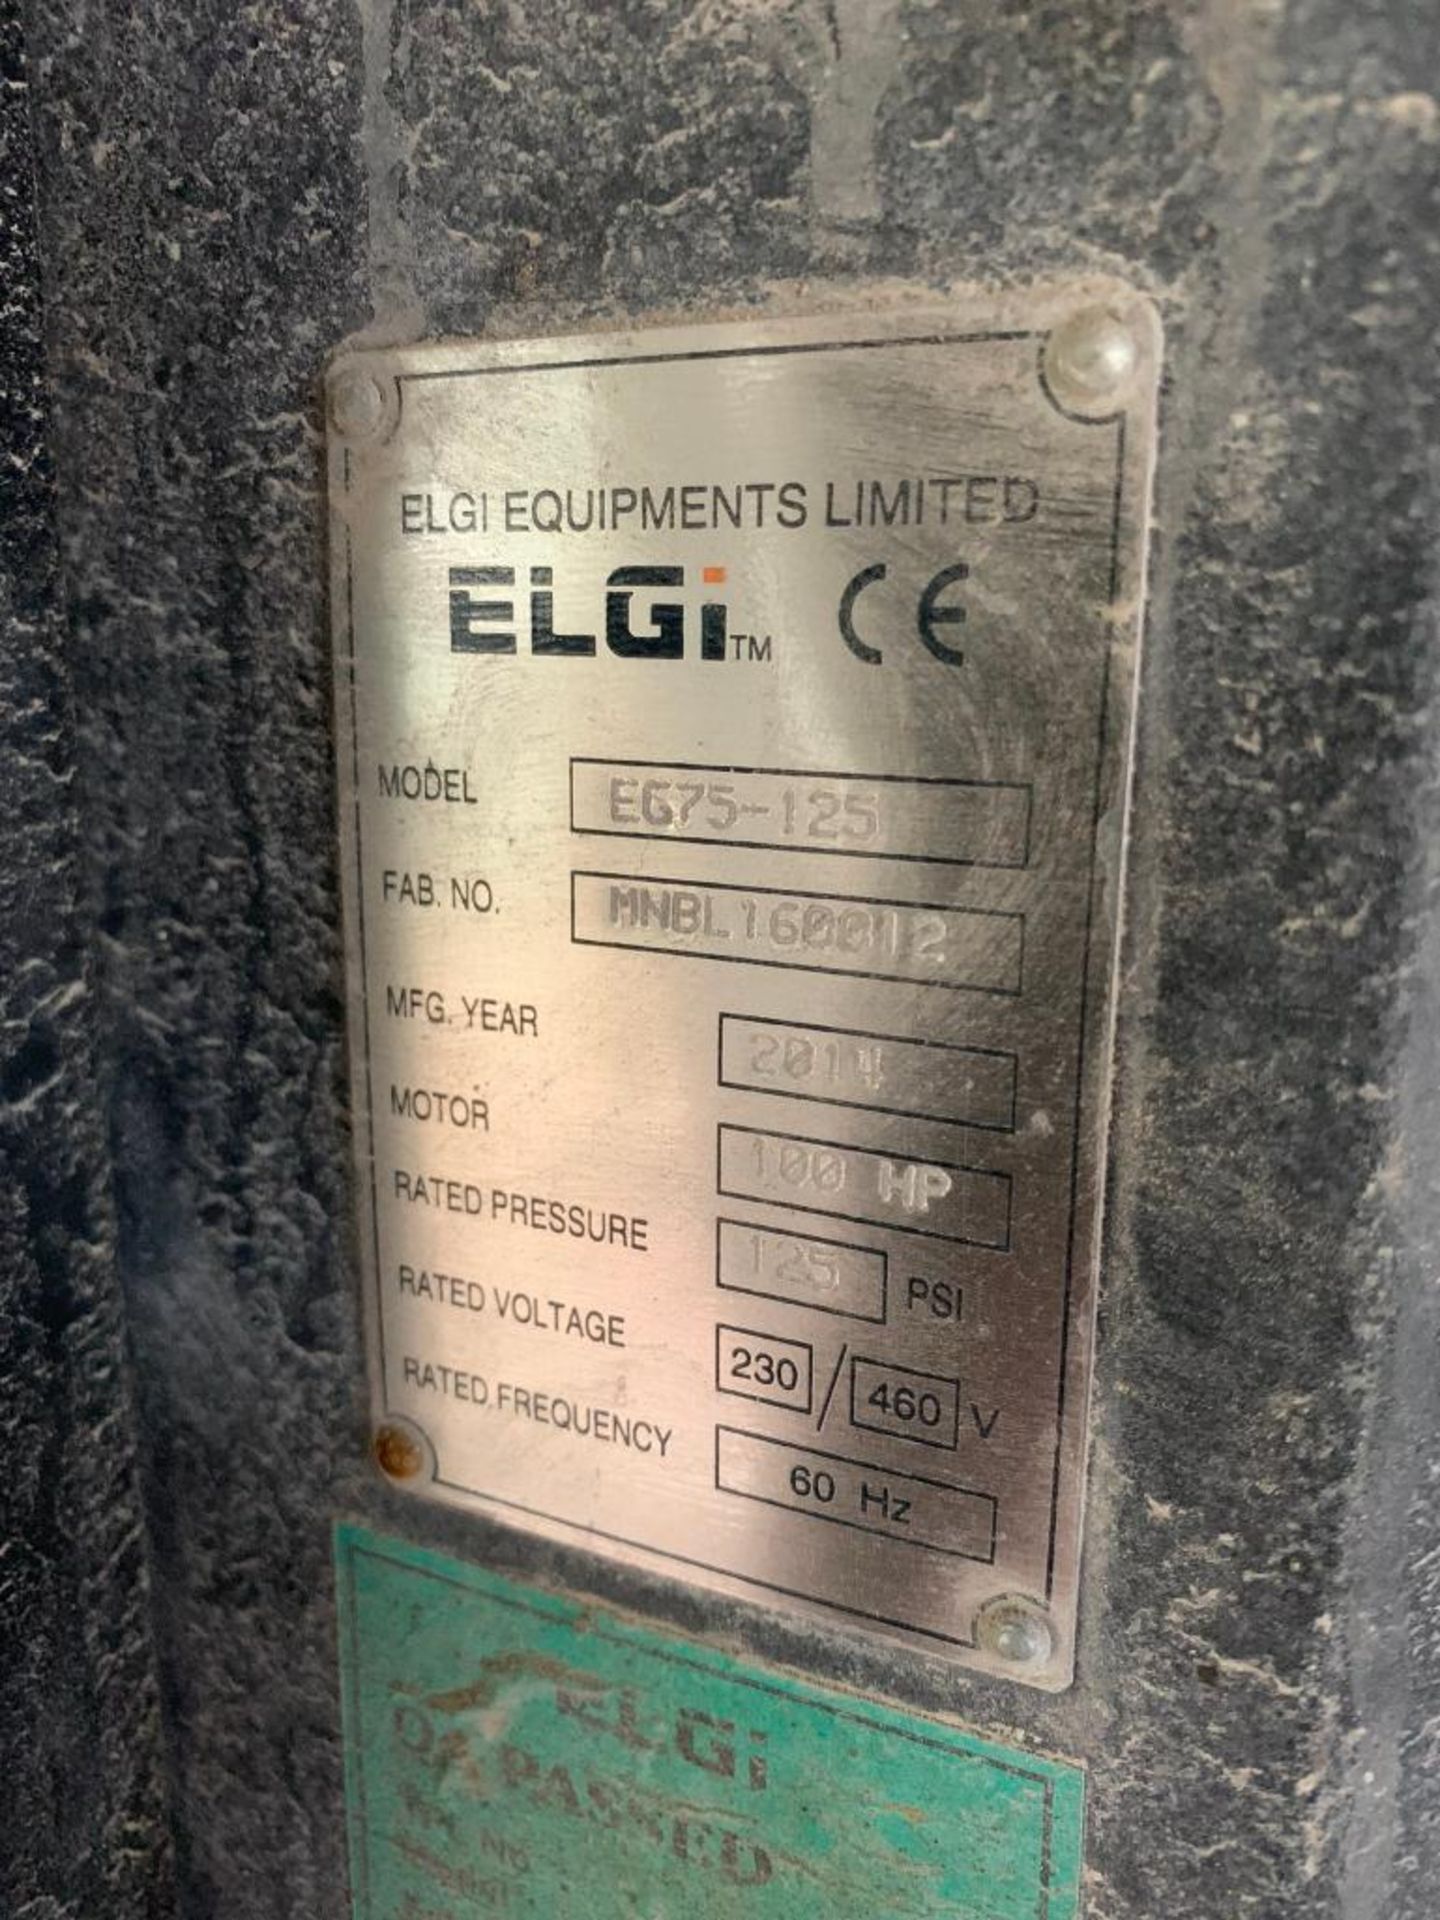 2014 Elgi 100-HP Air Compressor, Model EG75-125, 100-HP, S/N MNBL160012, Run Time: 44,609 Hours, Loa - Image 3 of 3